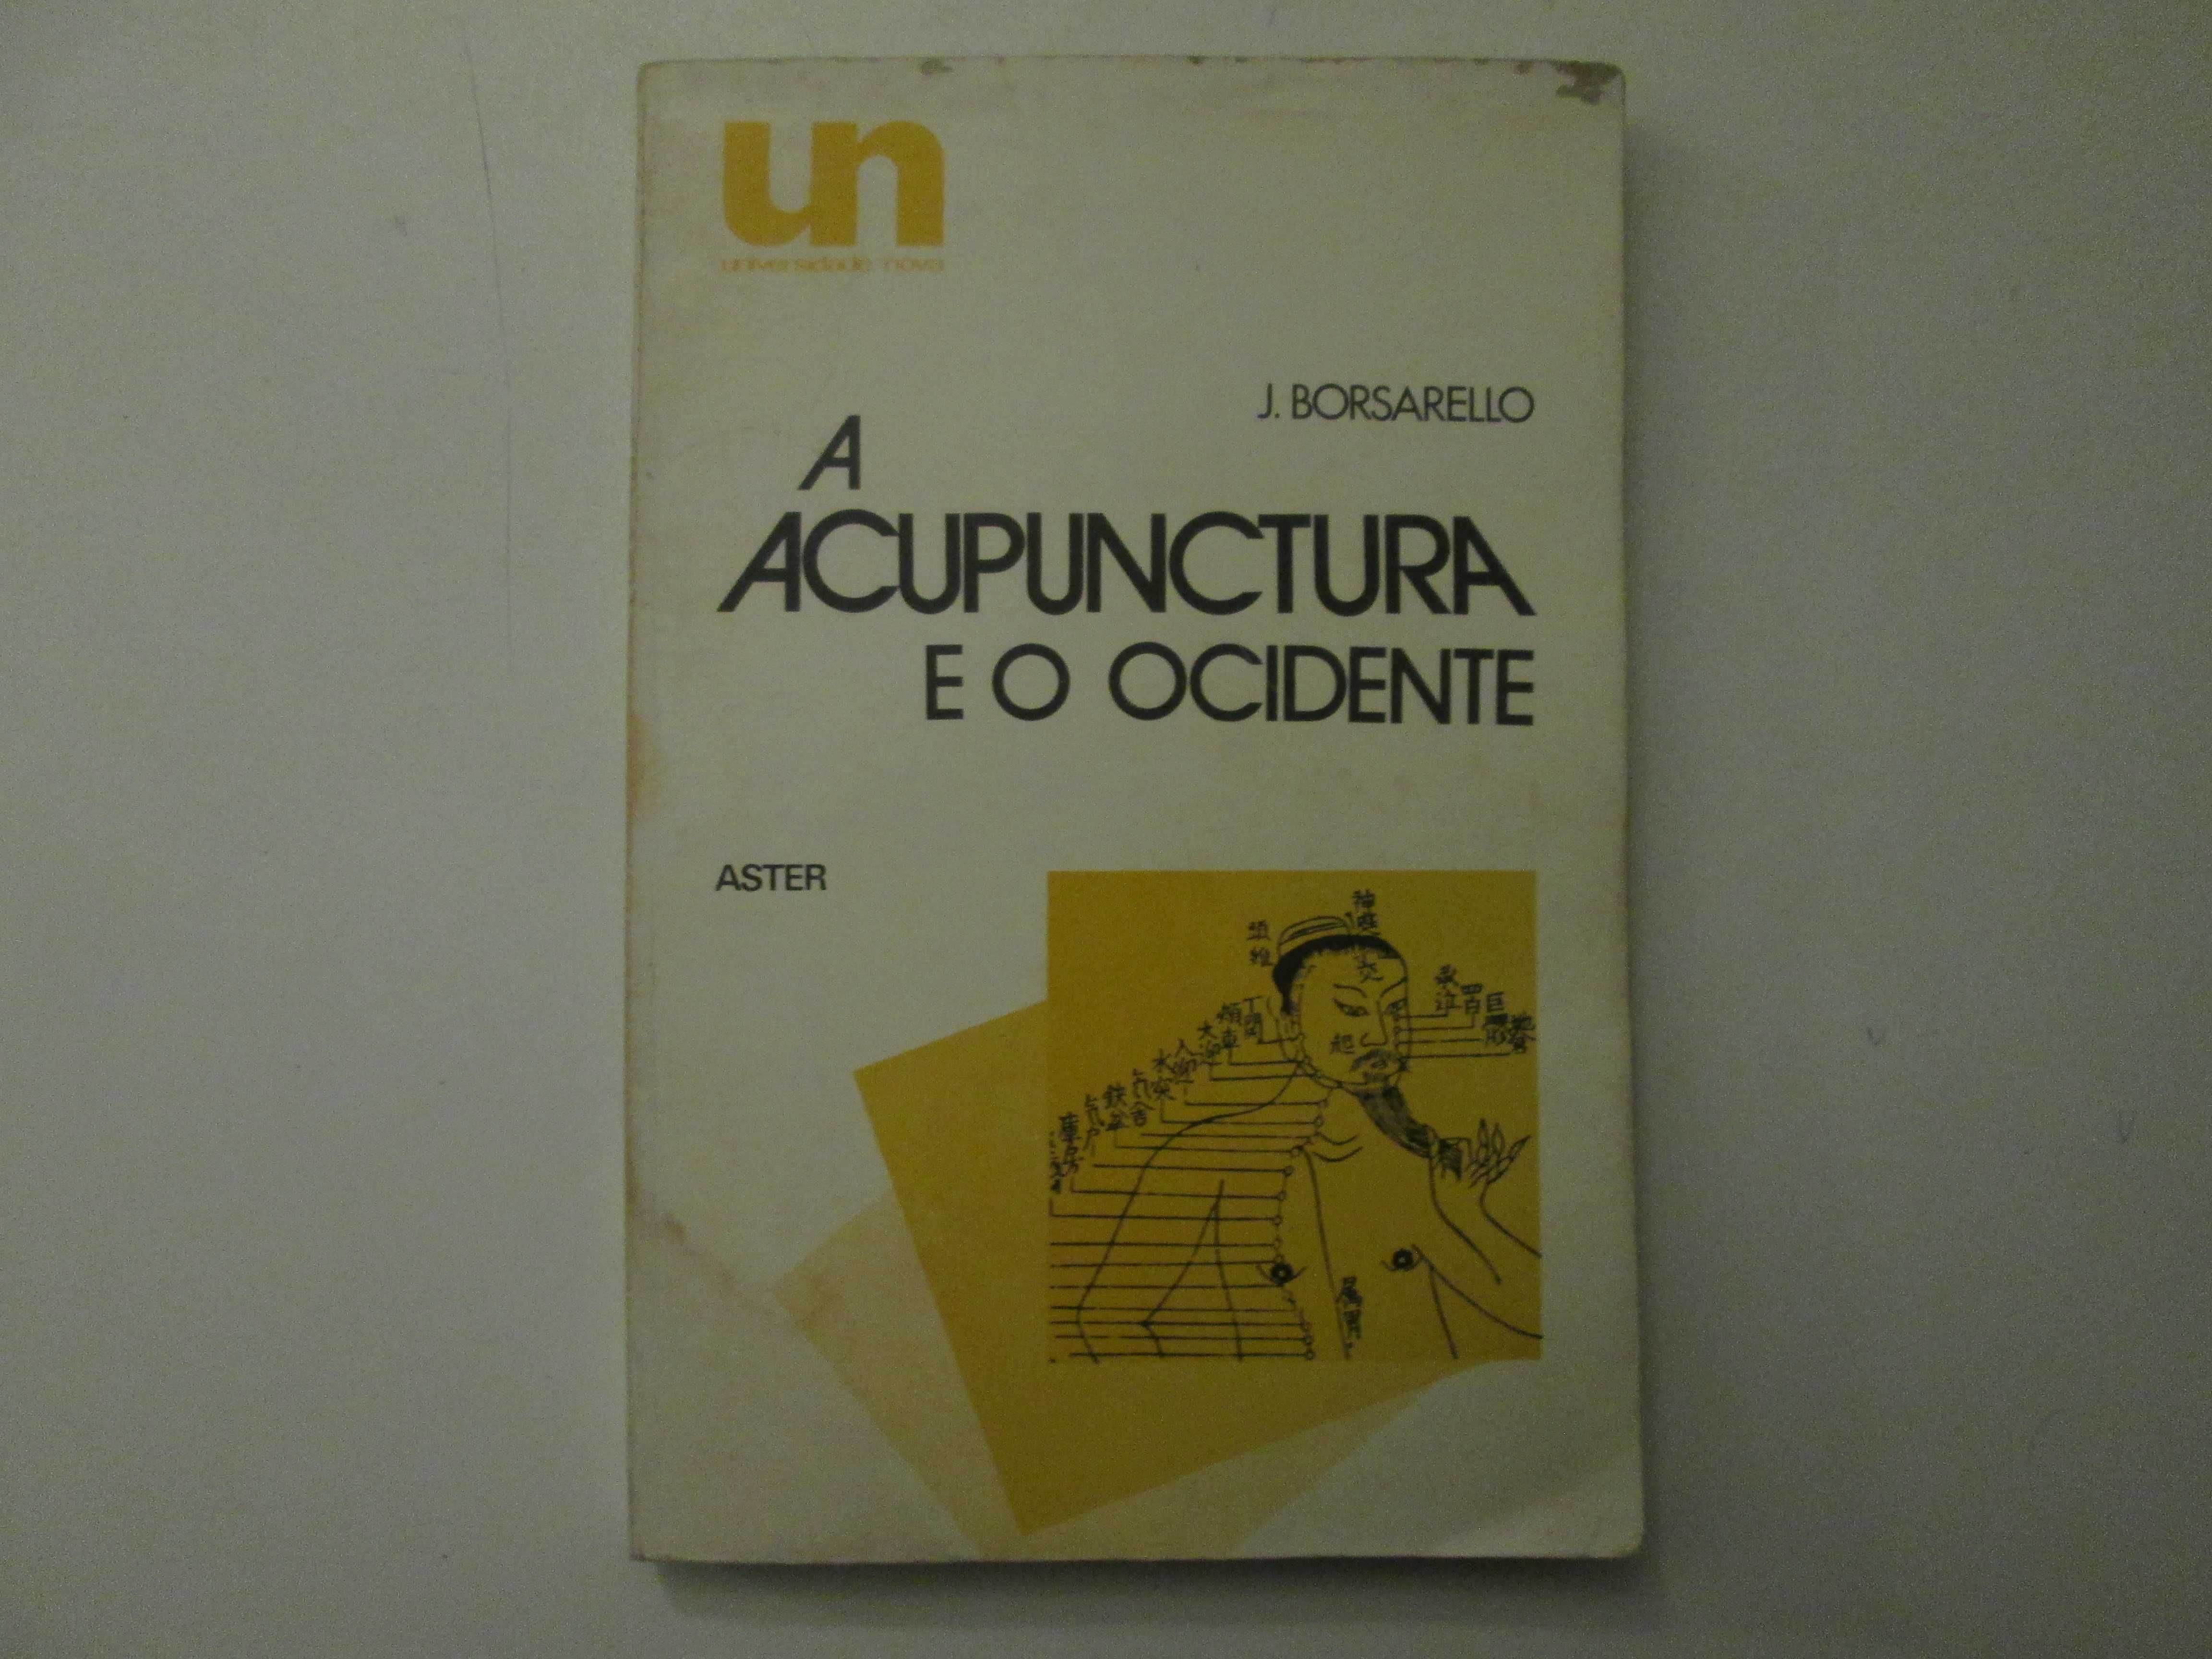 A Acupunctura e o Ocidente- J. Borsarello